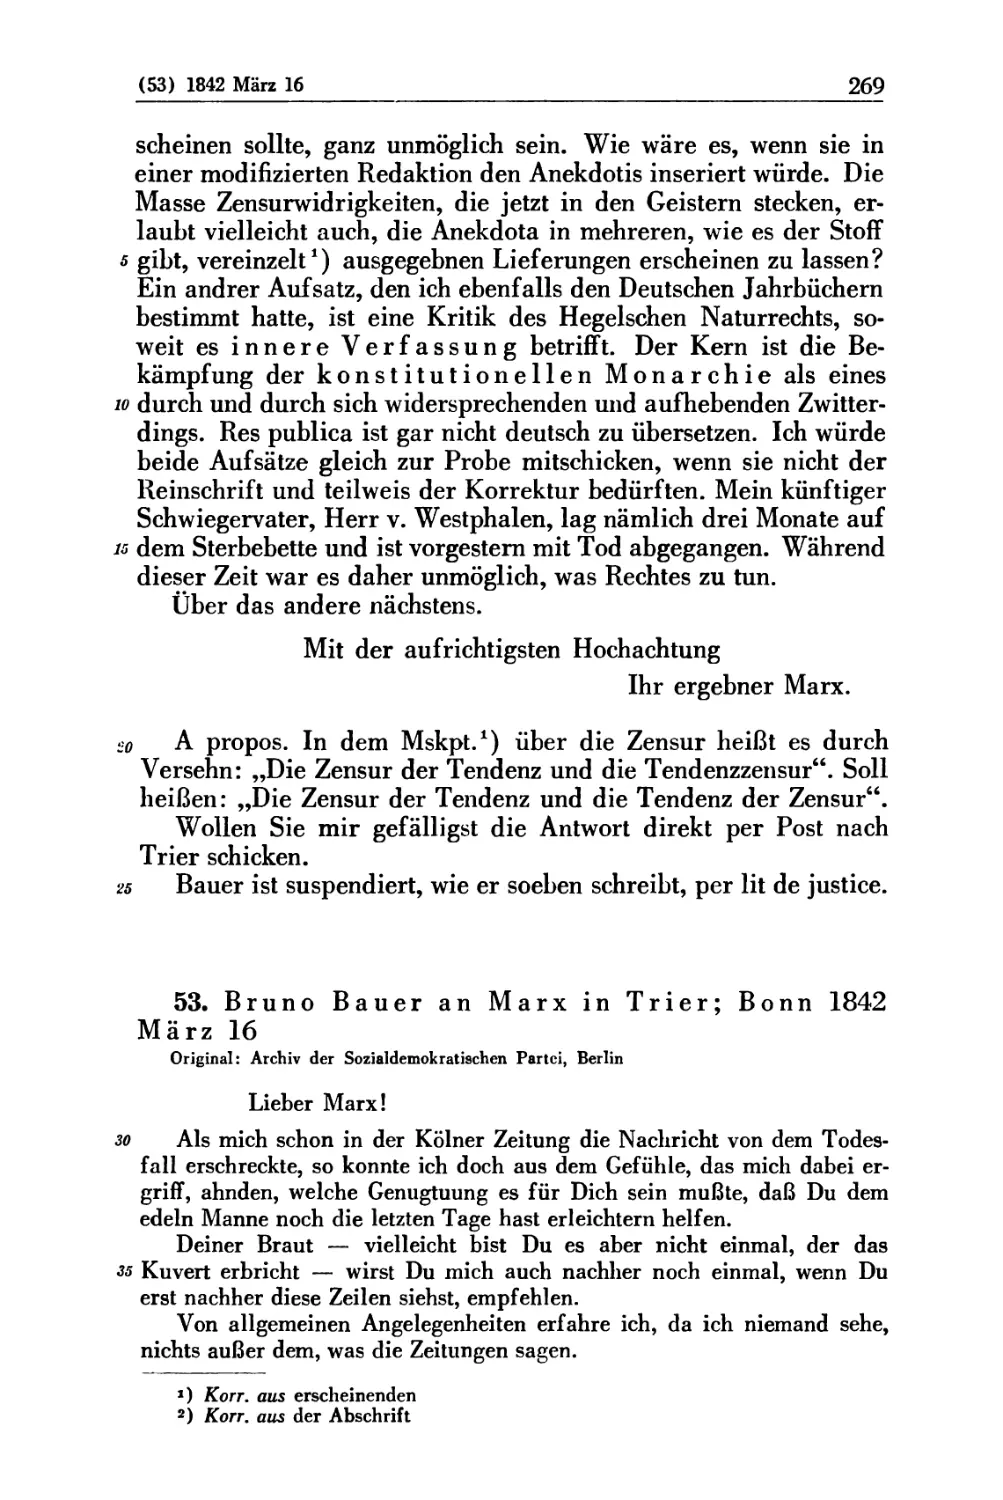 53. Bruno Bauer an Marx in Trier; Bonn 1842 März 16